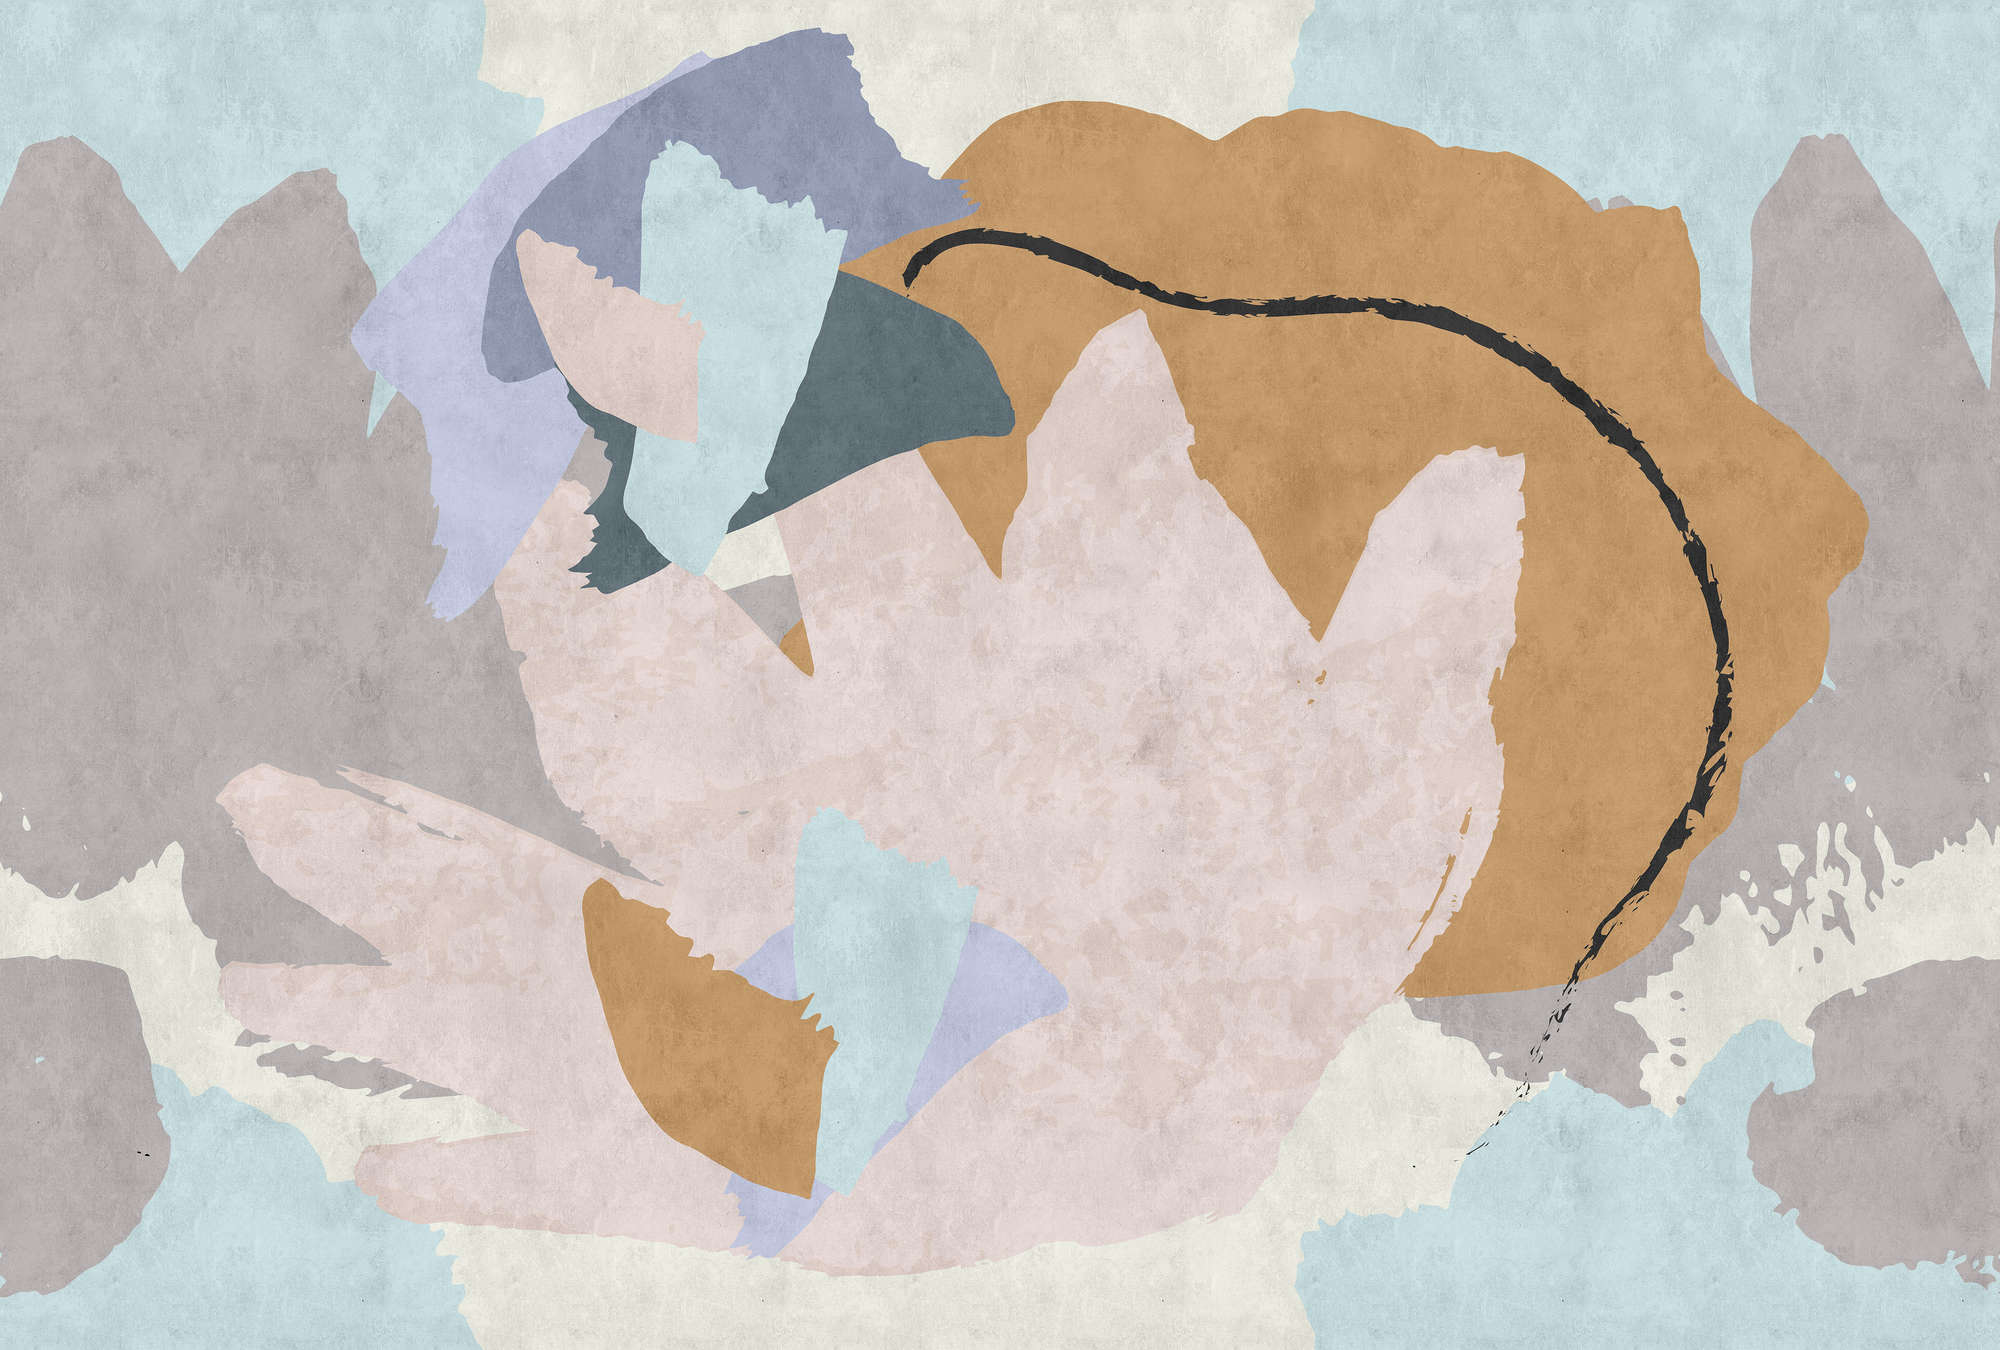             Floral Collage 2 - Carta da parati moderna con texture carta assorbente - Blu, Crema | Pile liscio opaco
        